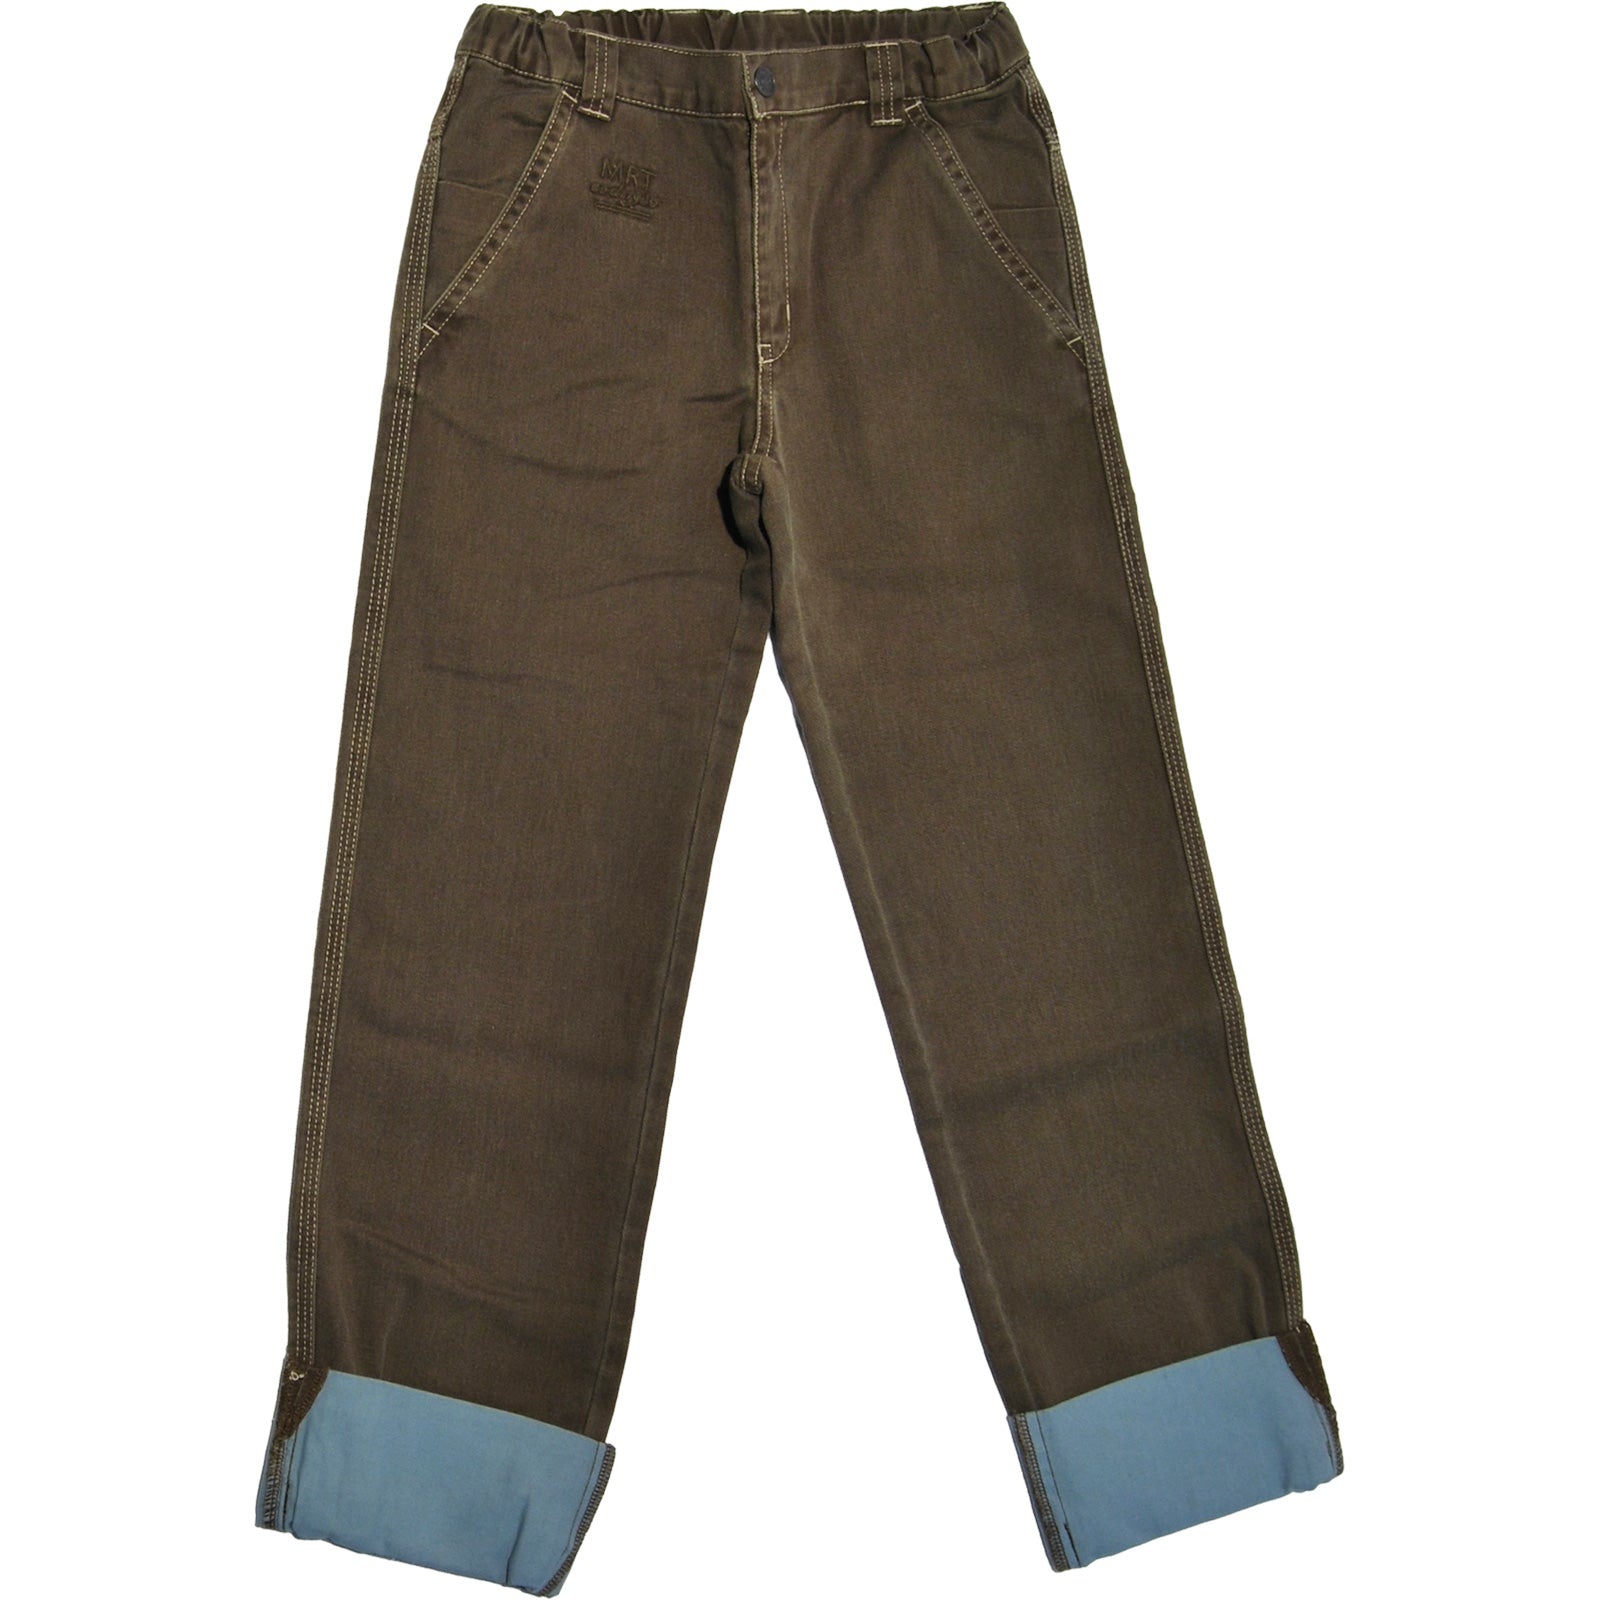 
  Pantalone denim dellla linea abbigliamento bambino Mirtillo, 5 tasche , misura regolabile
  in...